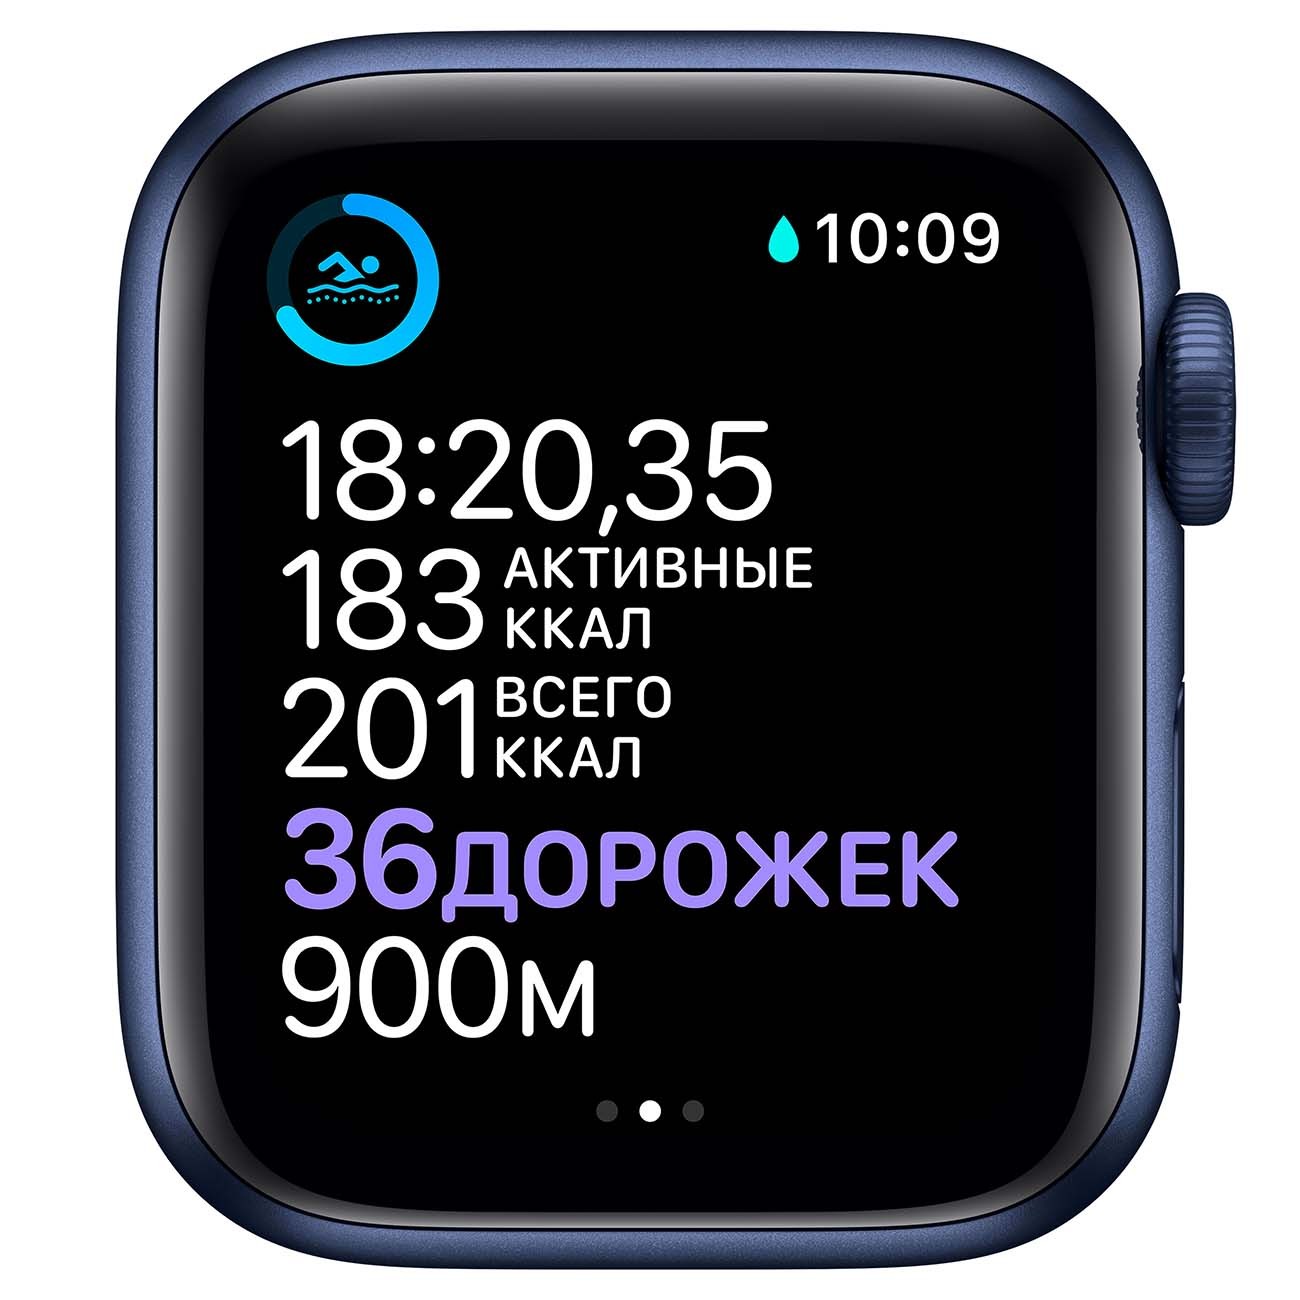 Смарт-часы Apple Watch S6 40mm Blue Aluminum Case with Deep Navy Sport Band (MG143RU/A)